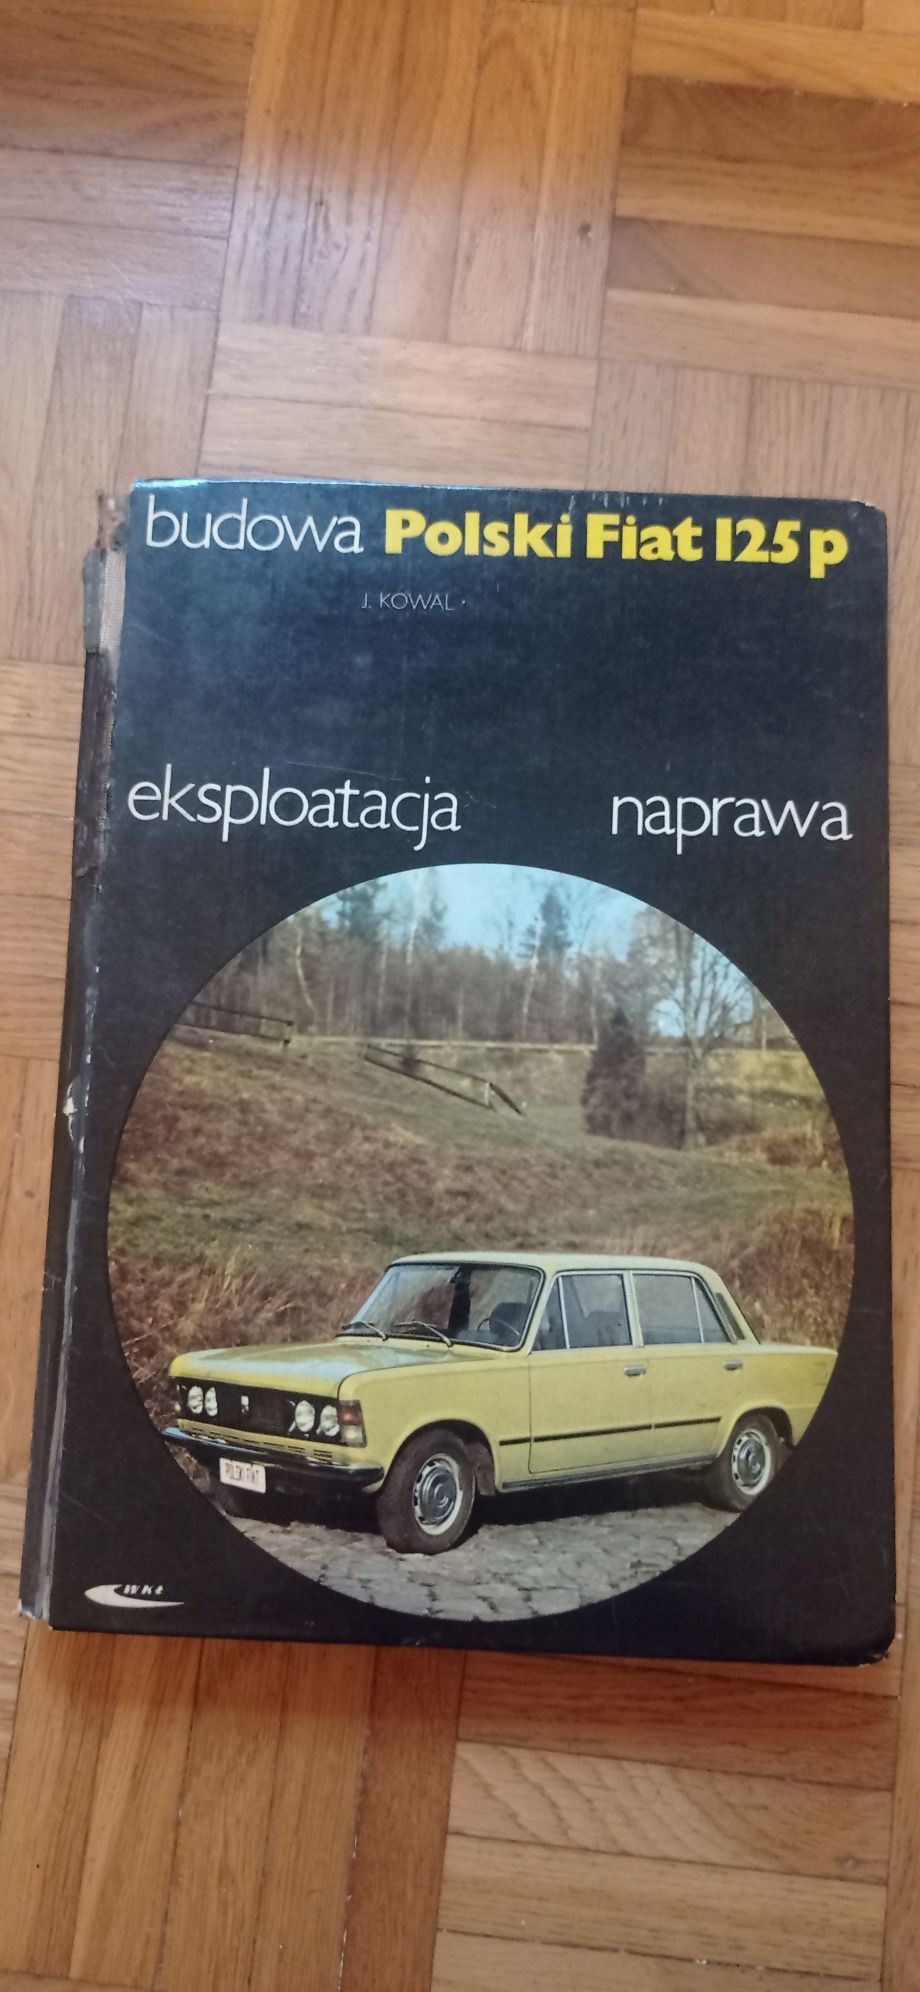 Polski Fiat 125p Budowa Eksploatacja Naprawa